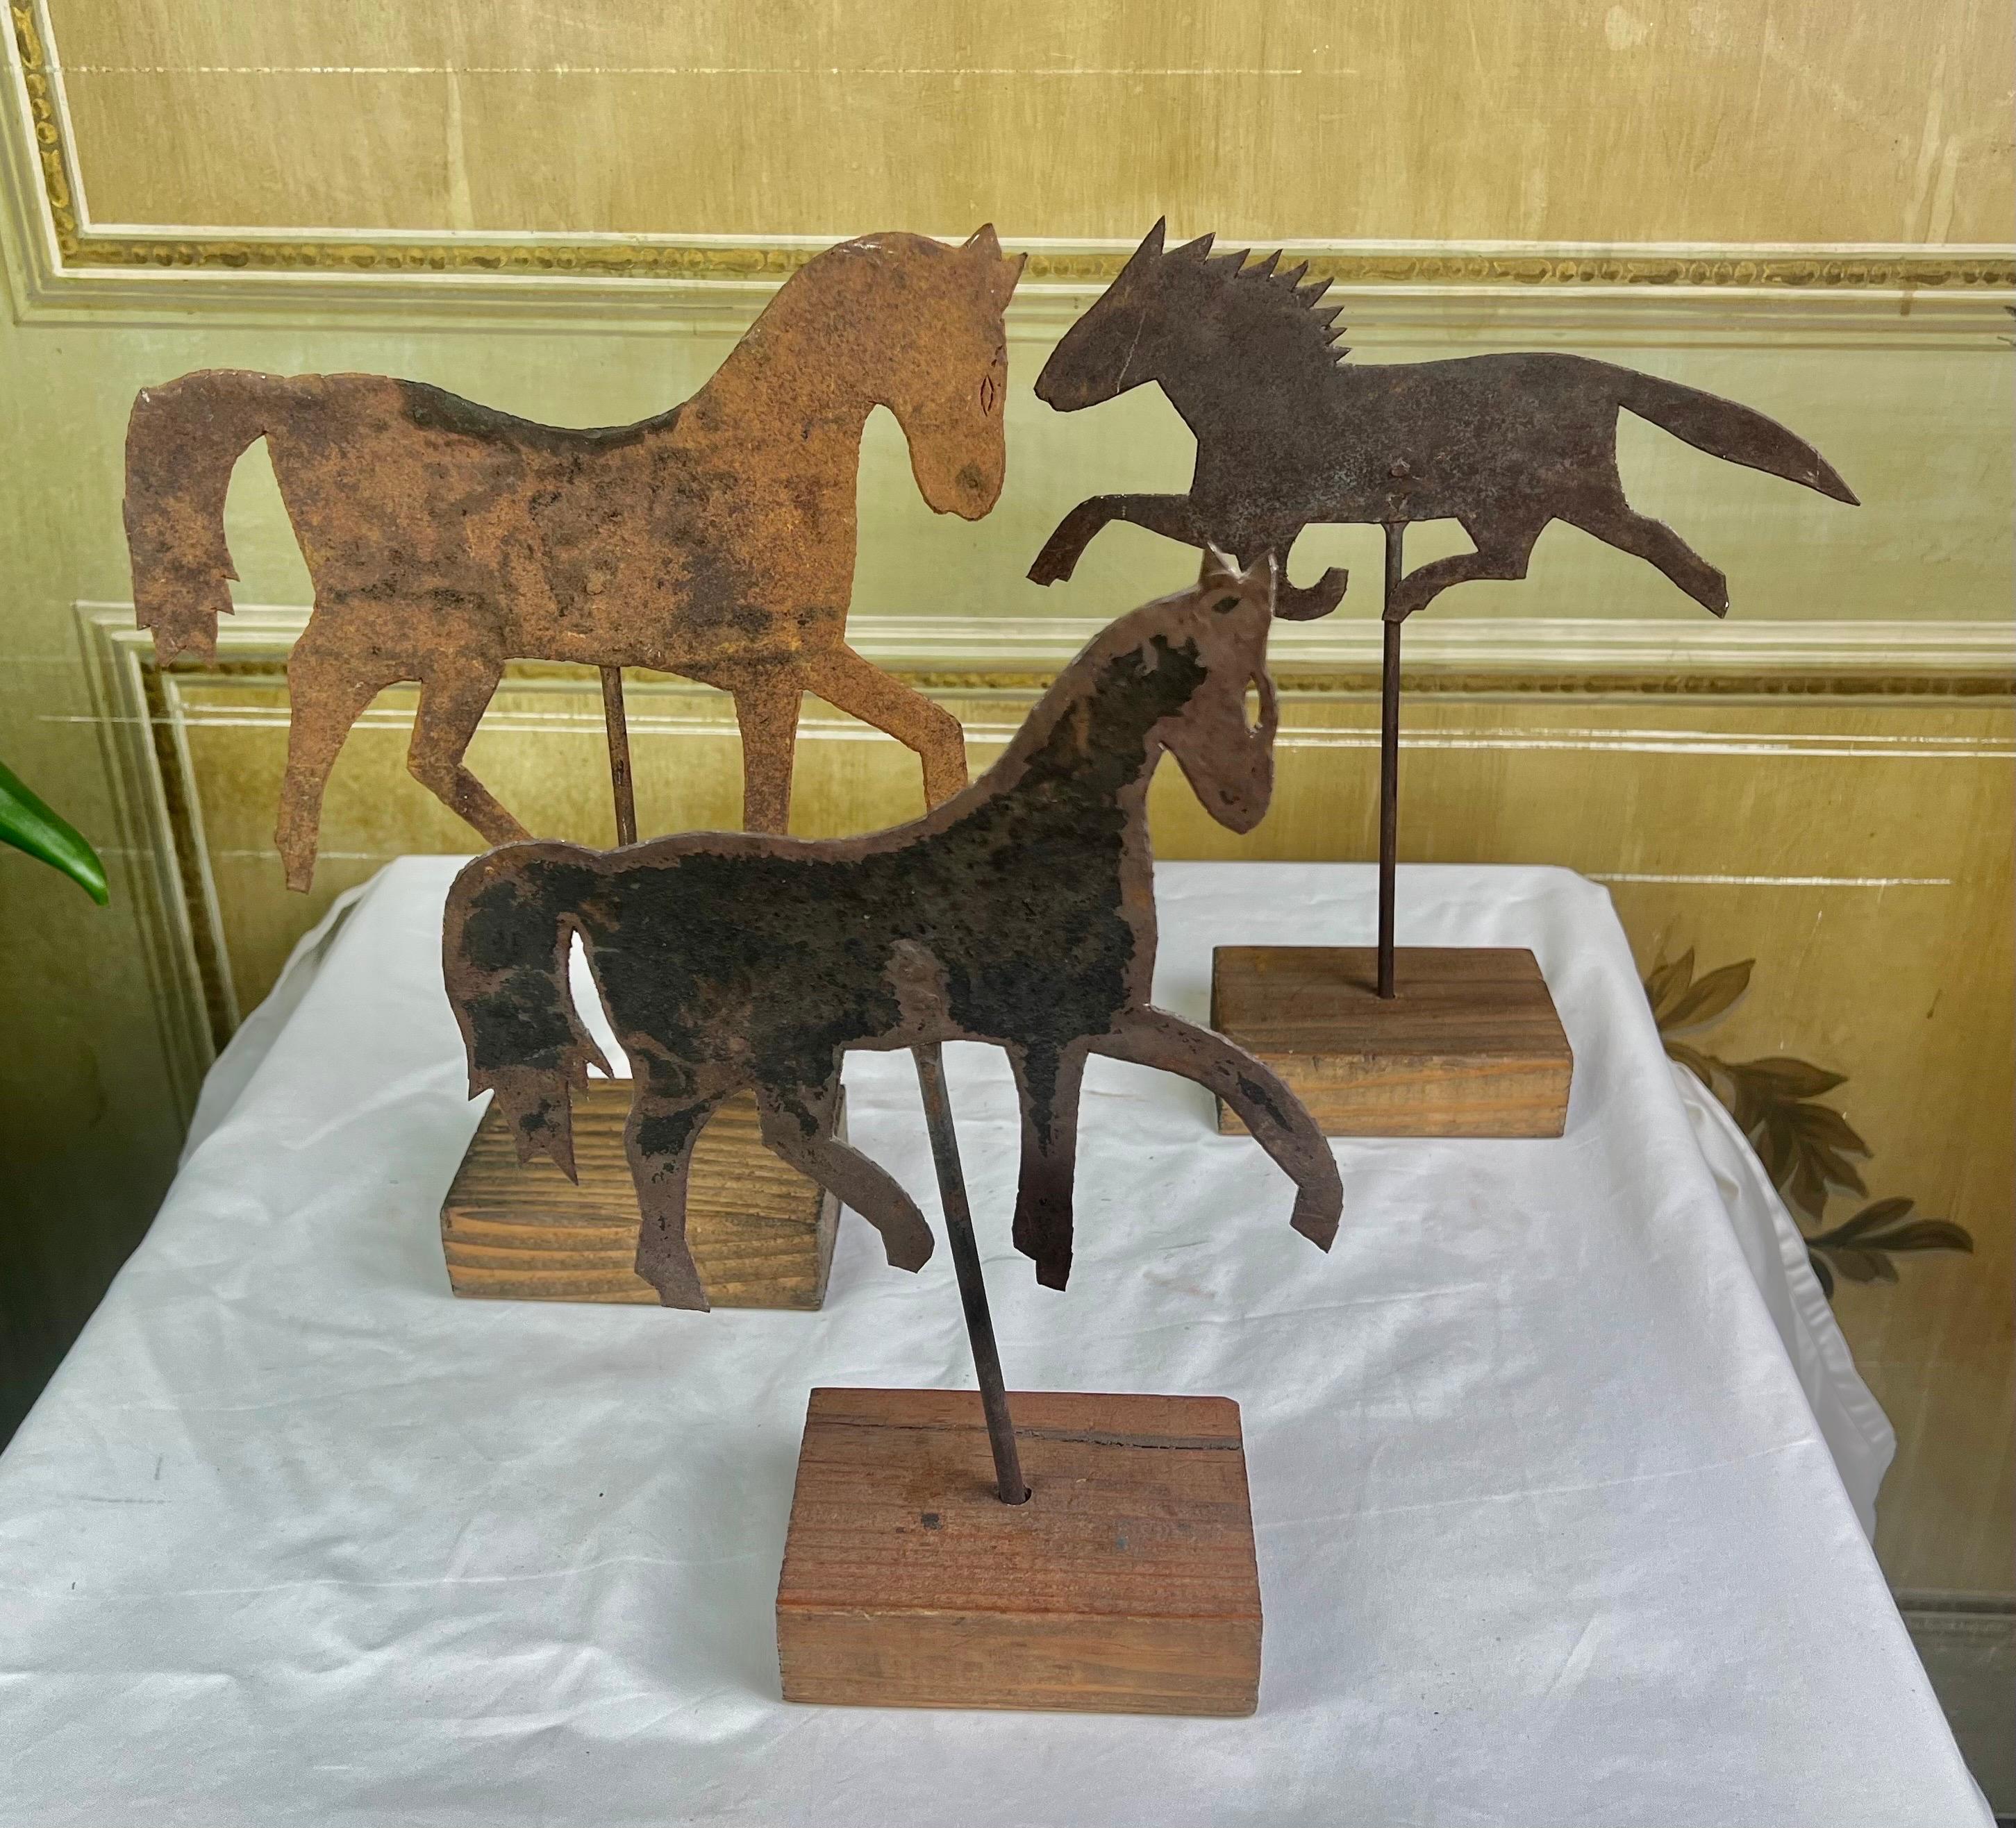 Satz von drei Metallpferden auf Holzsockel montiert. Diese bezaubernden Pferde stammen aus der gleichen Sammlung.

Größen:
1) 13,5 